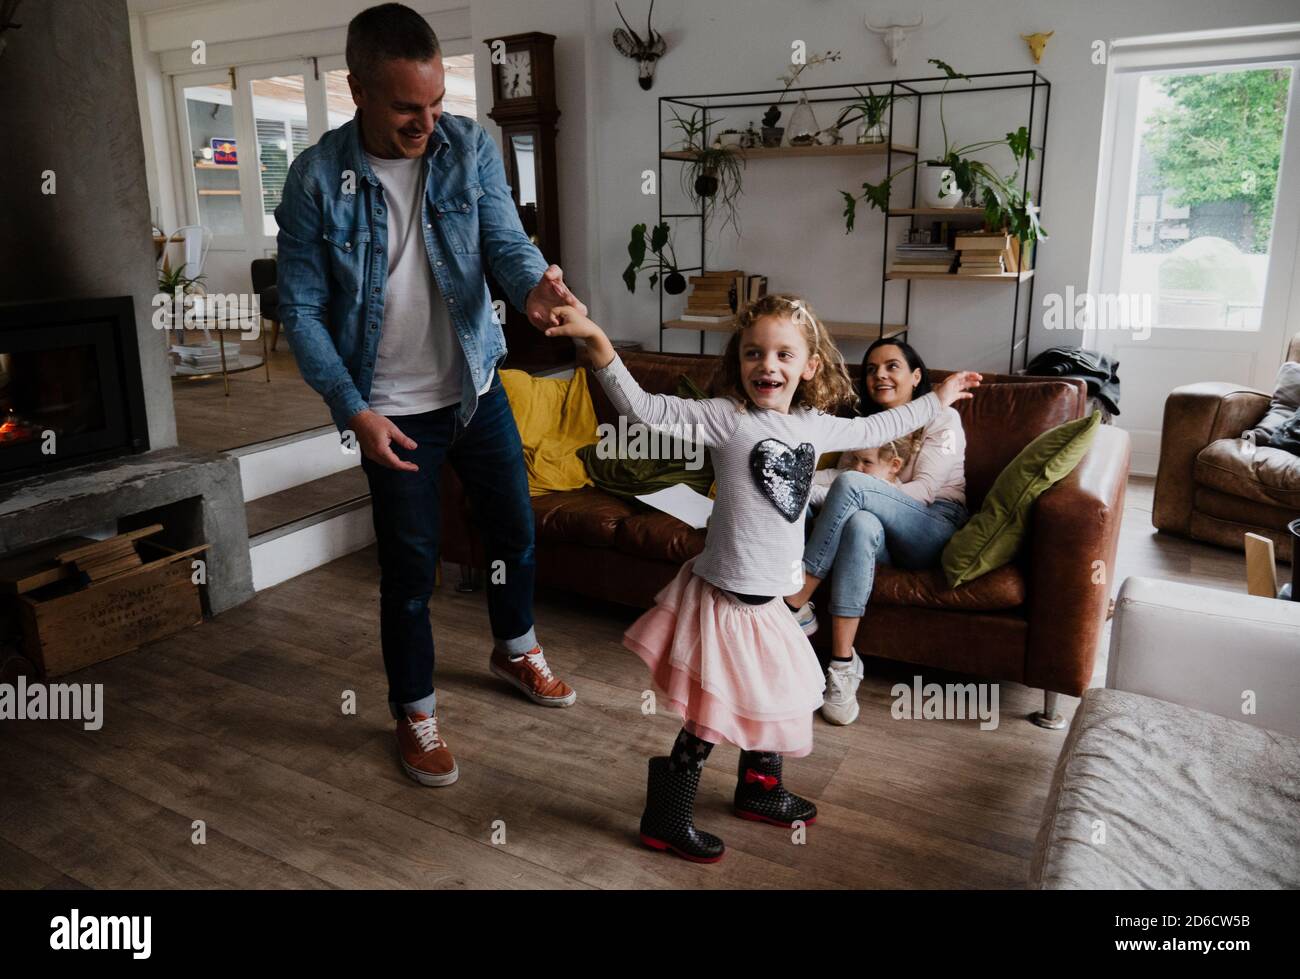 Vater und Tochter tanzen glücklich zusammen, während Mutter bequem sitzt Auf Wohnzimmer Sofa Stockfoto